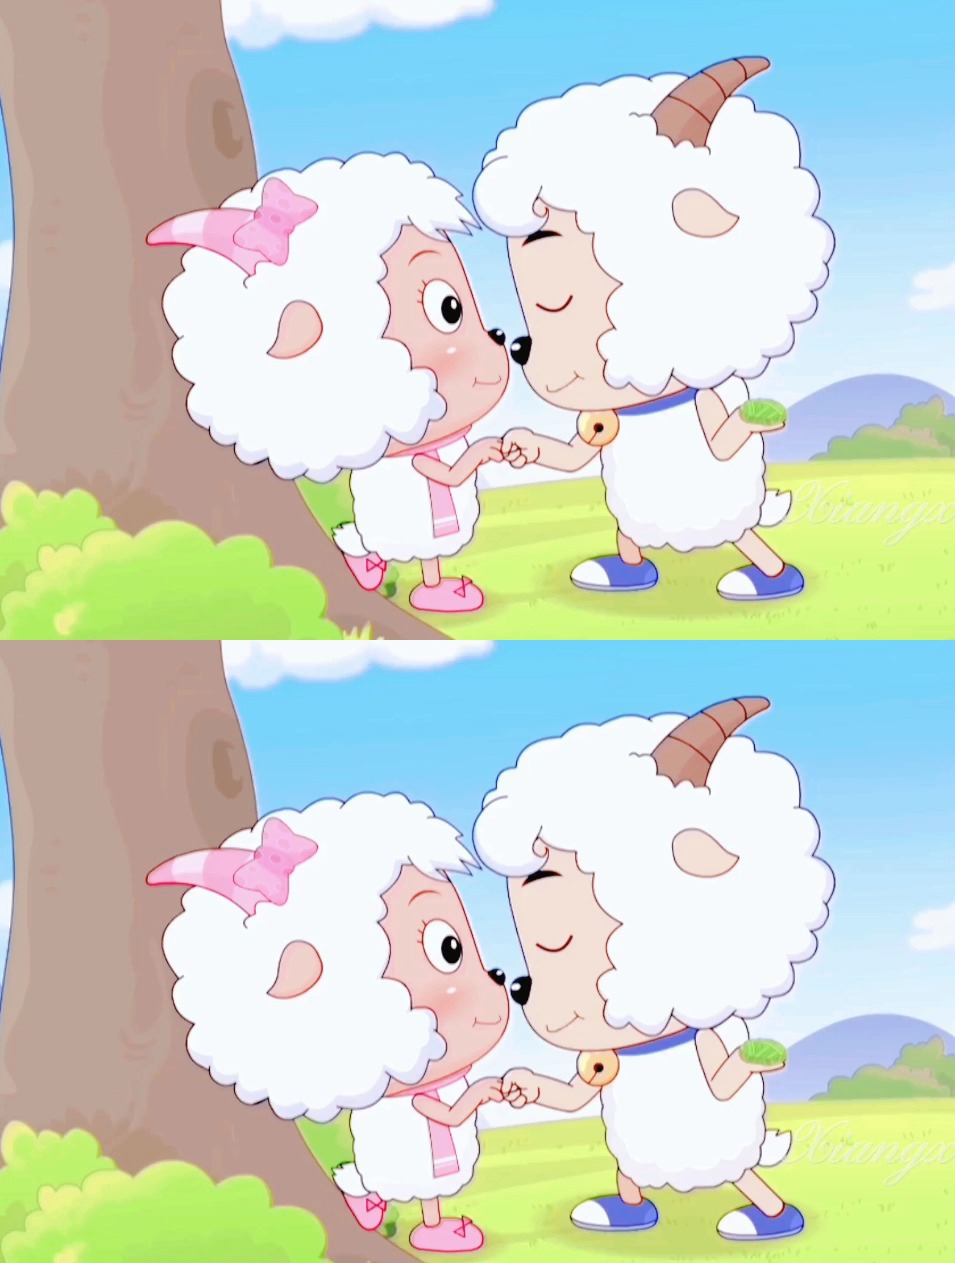 喜羊羊和美羊羊就一个字,甜!